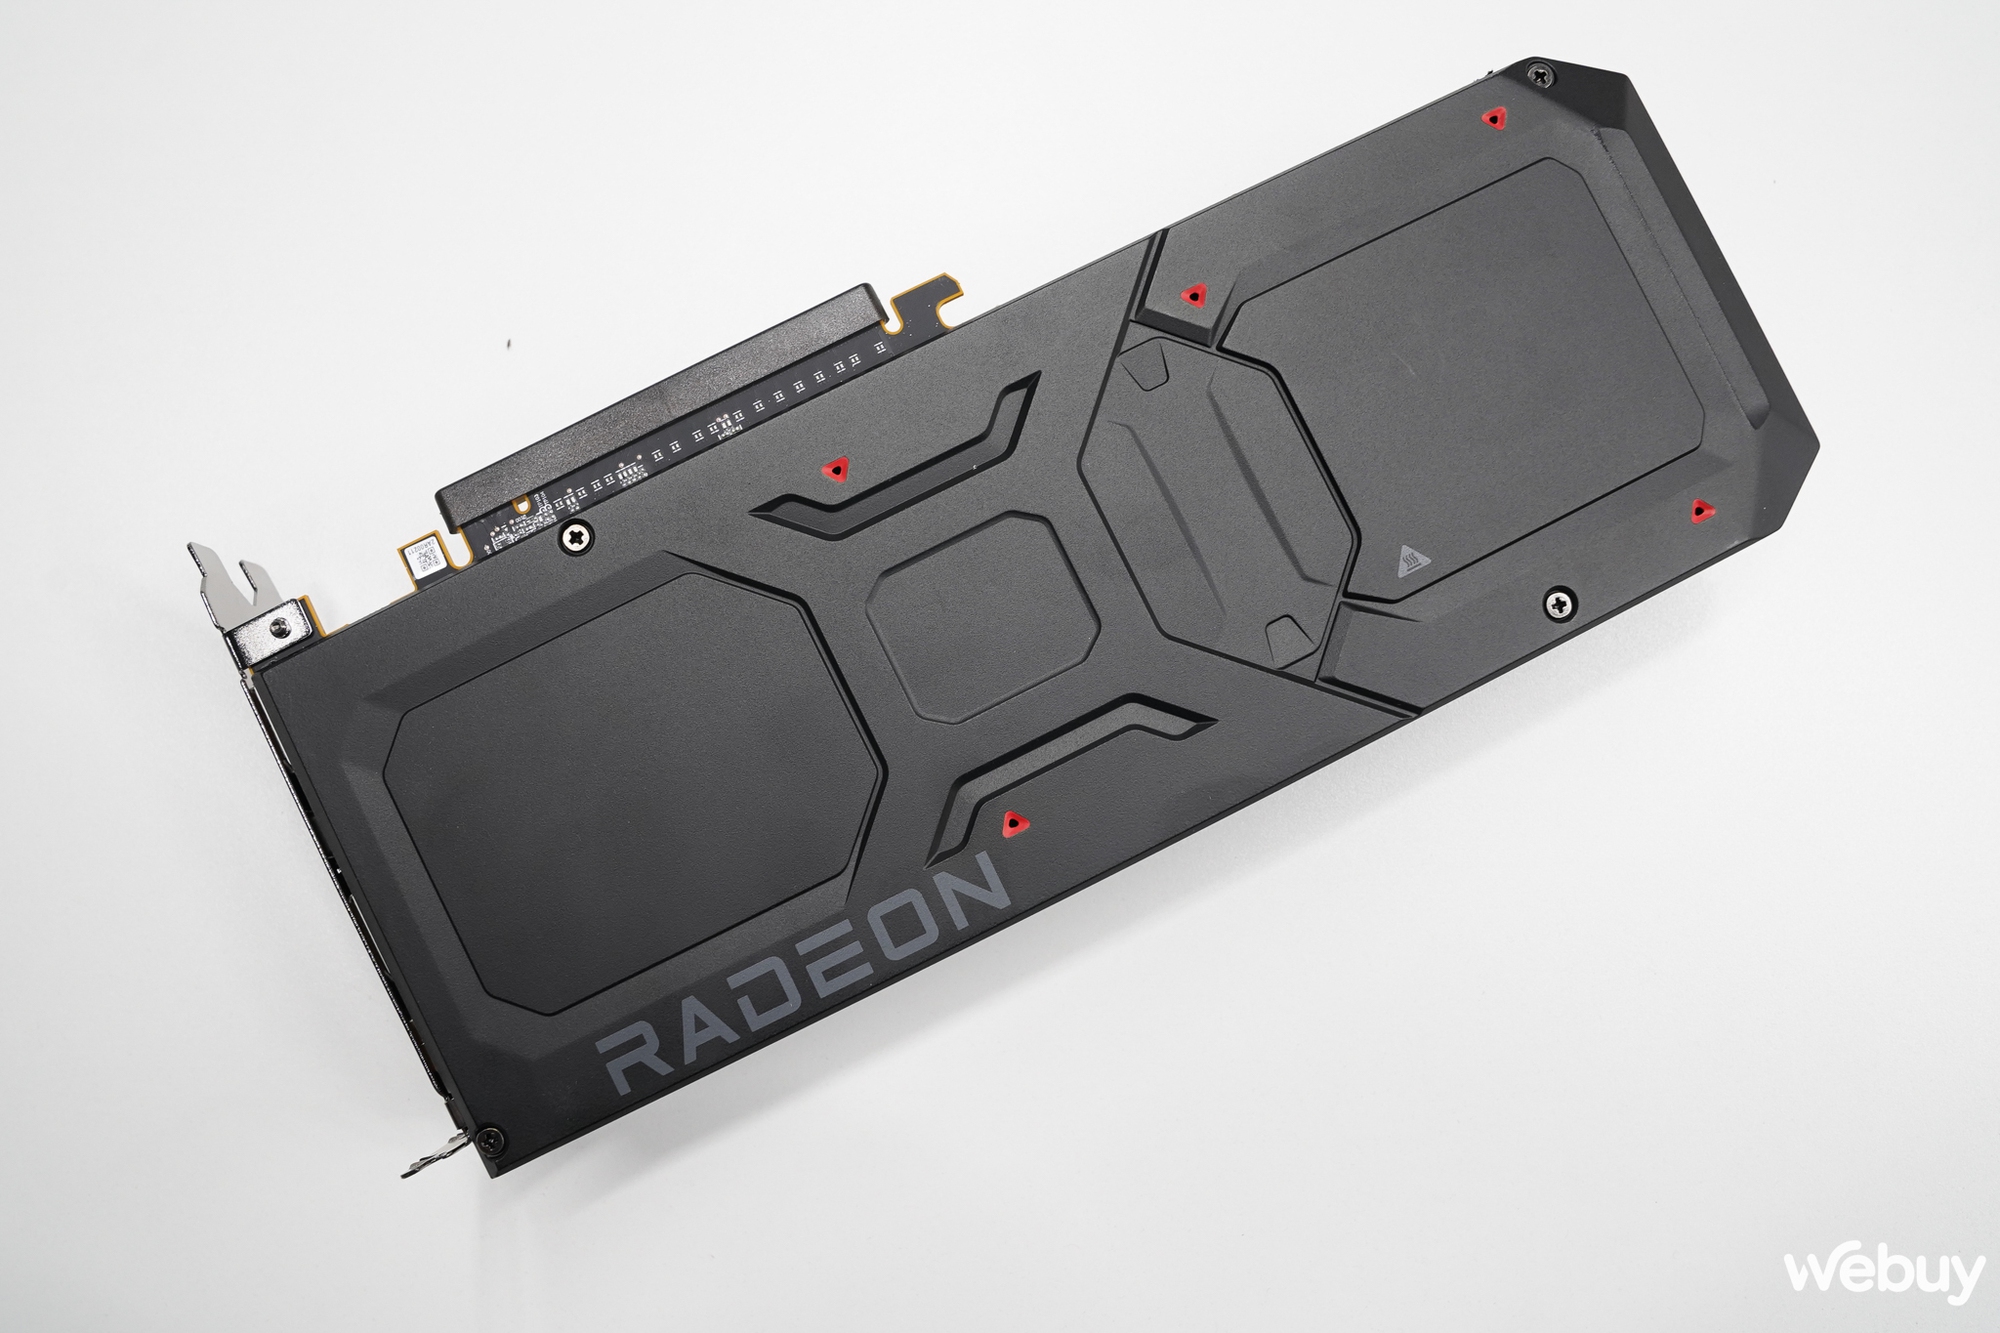 ‏Đánh giá AMD Radeon RX 7900 XT: Lựa chọn cho cấu hình chơi game 4K với mức giá hợp lý‏ - Ảnh 5.